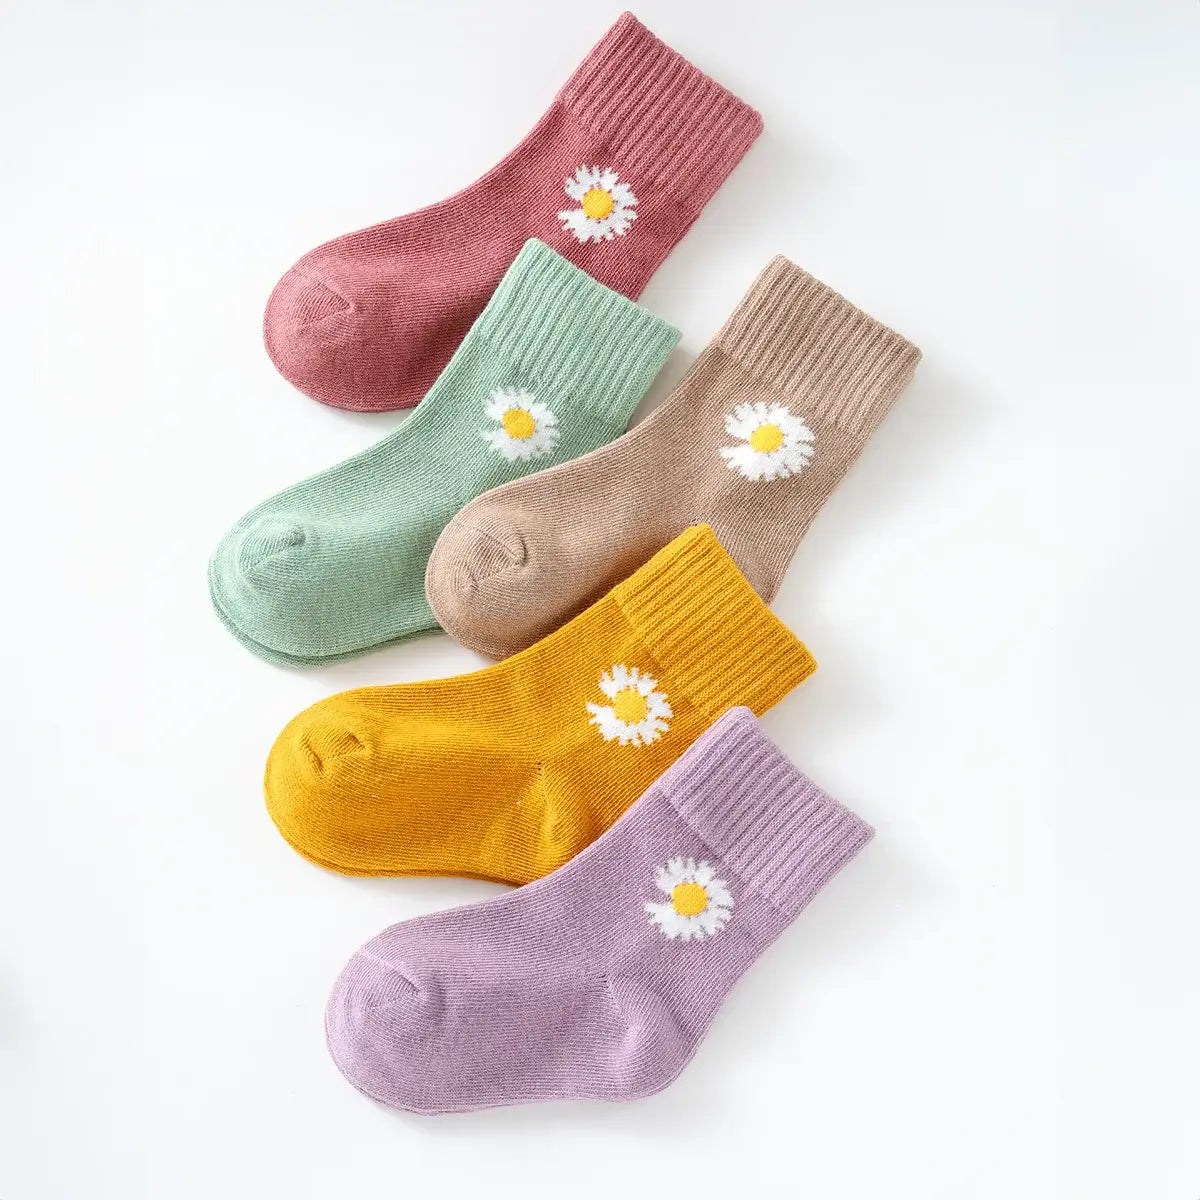 Chaussettes longues en coton à motif fleur pour enfants | Chaussettes douces et confortables | Disponibles en différentes tailles et couleurs | Un cadeau parfait pour les enfants de tous âges